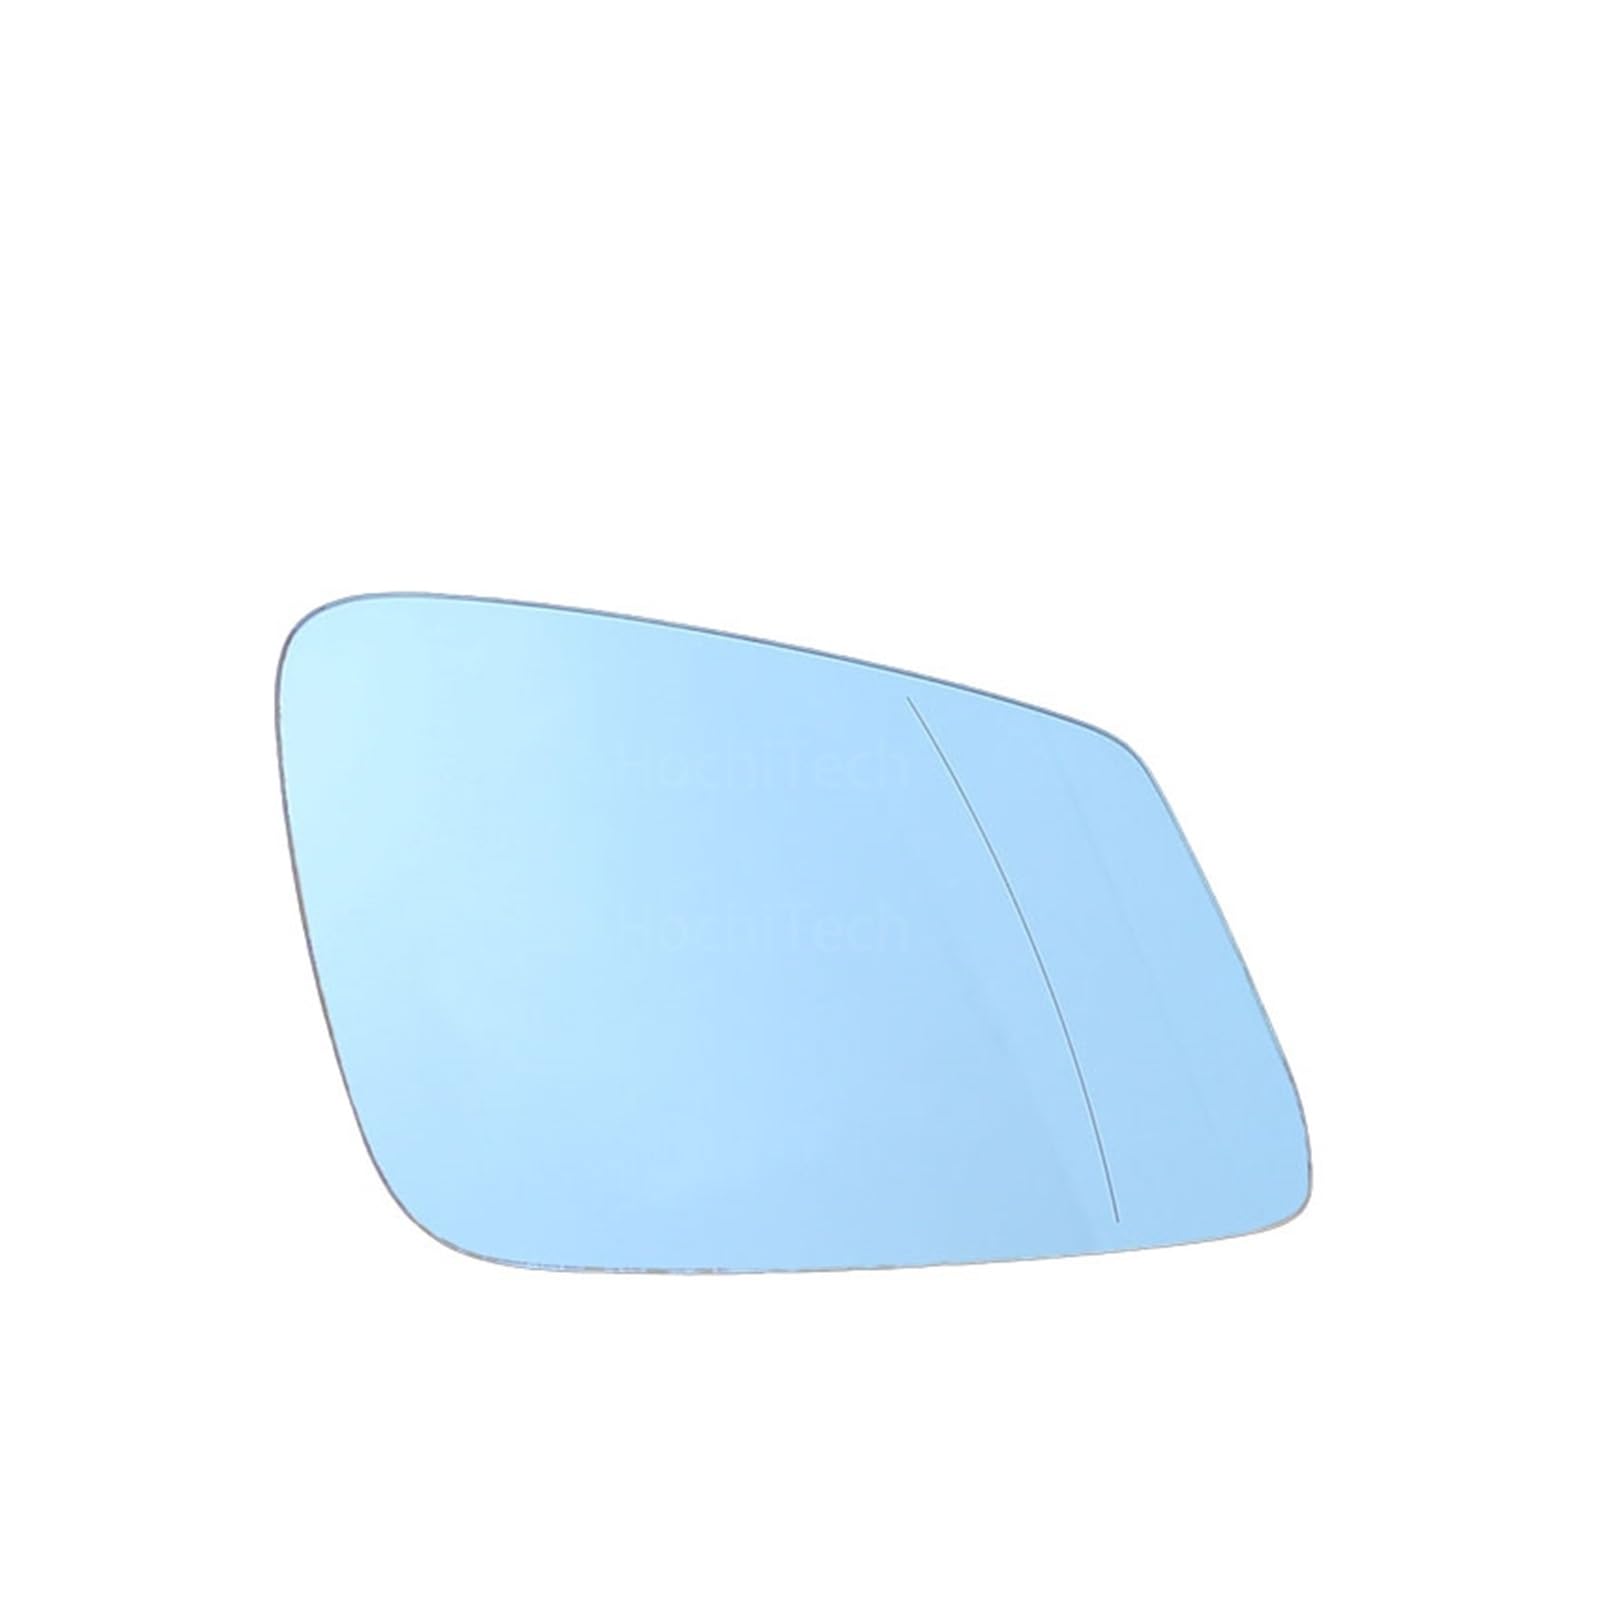 Außenspiegel Für Für F20 Für F22 Für F23 Für F30 Für F34 Für F36 Für F48 Für F45 Für F31 Für F87 2010-2016 Blau/Weiß Auto Seite Flügel Spiegel Glas Türspiegelglas(Blue,Right) von NingRuiBhd